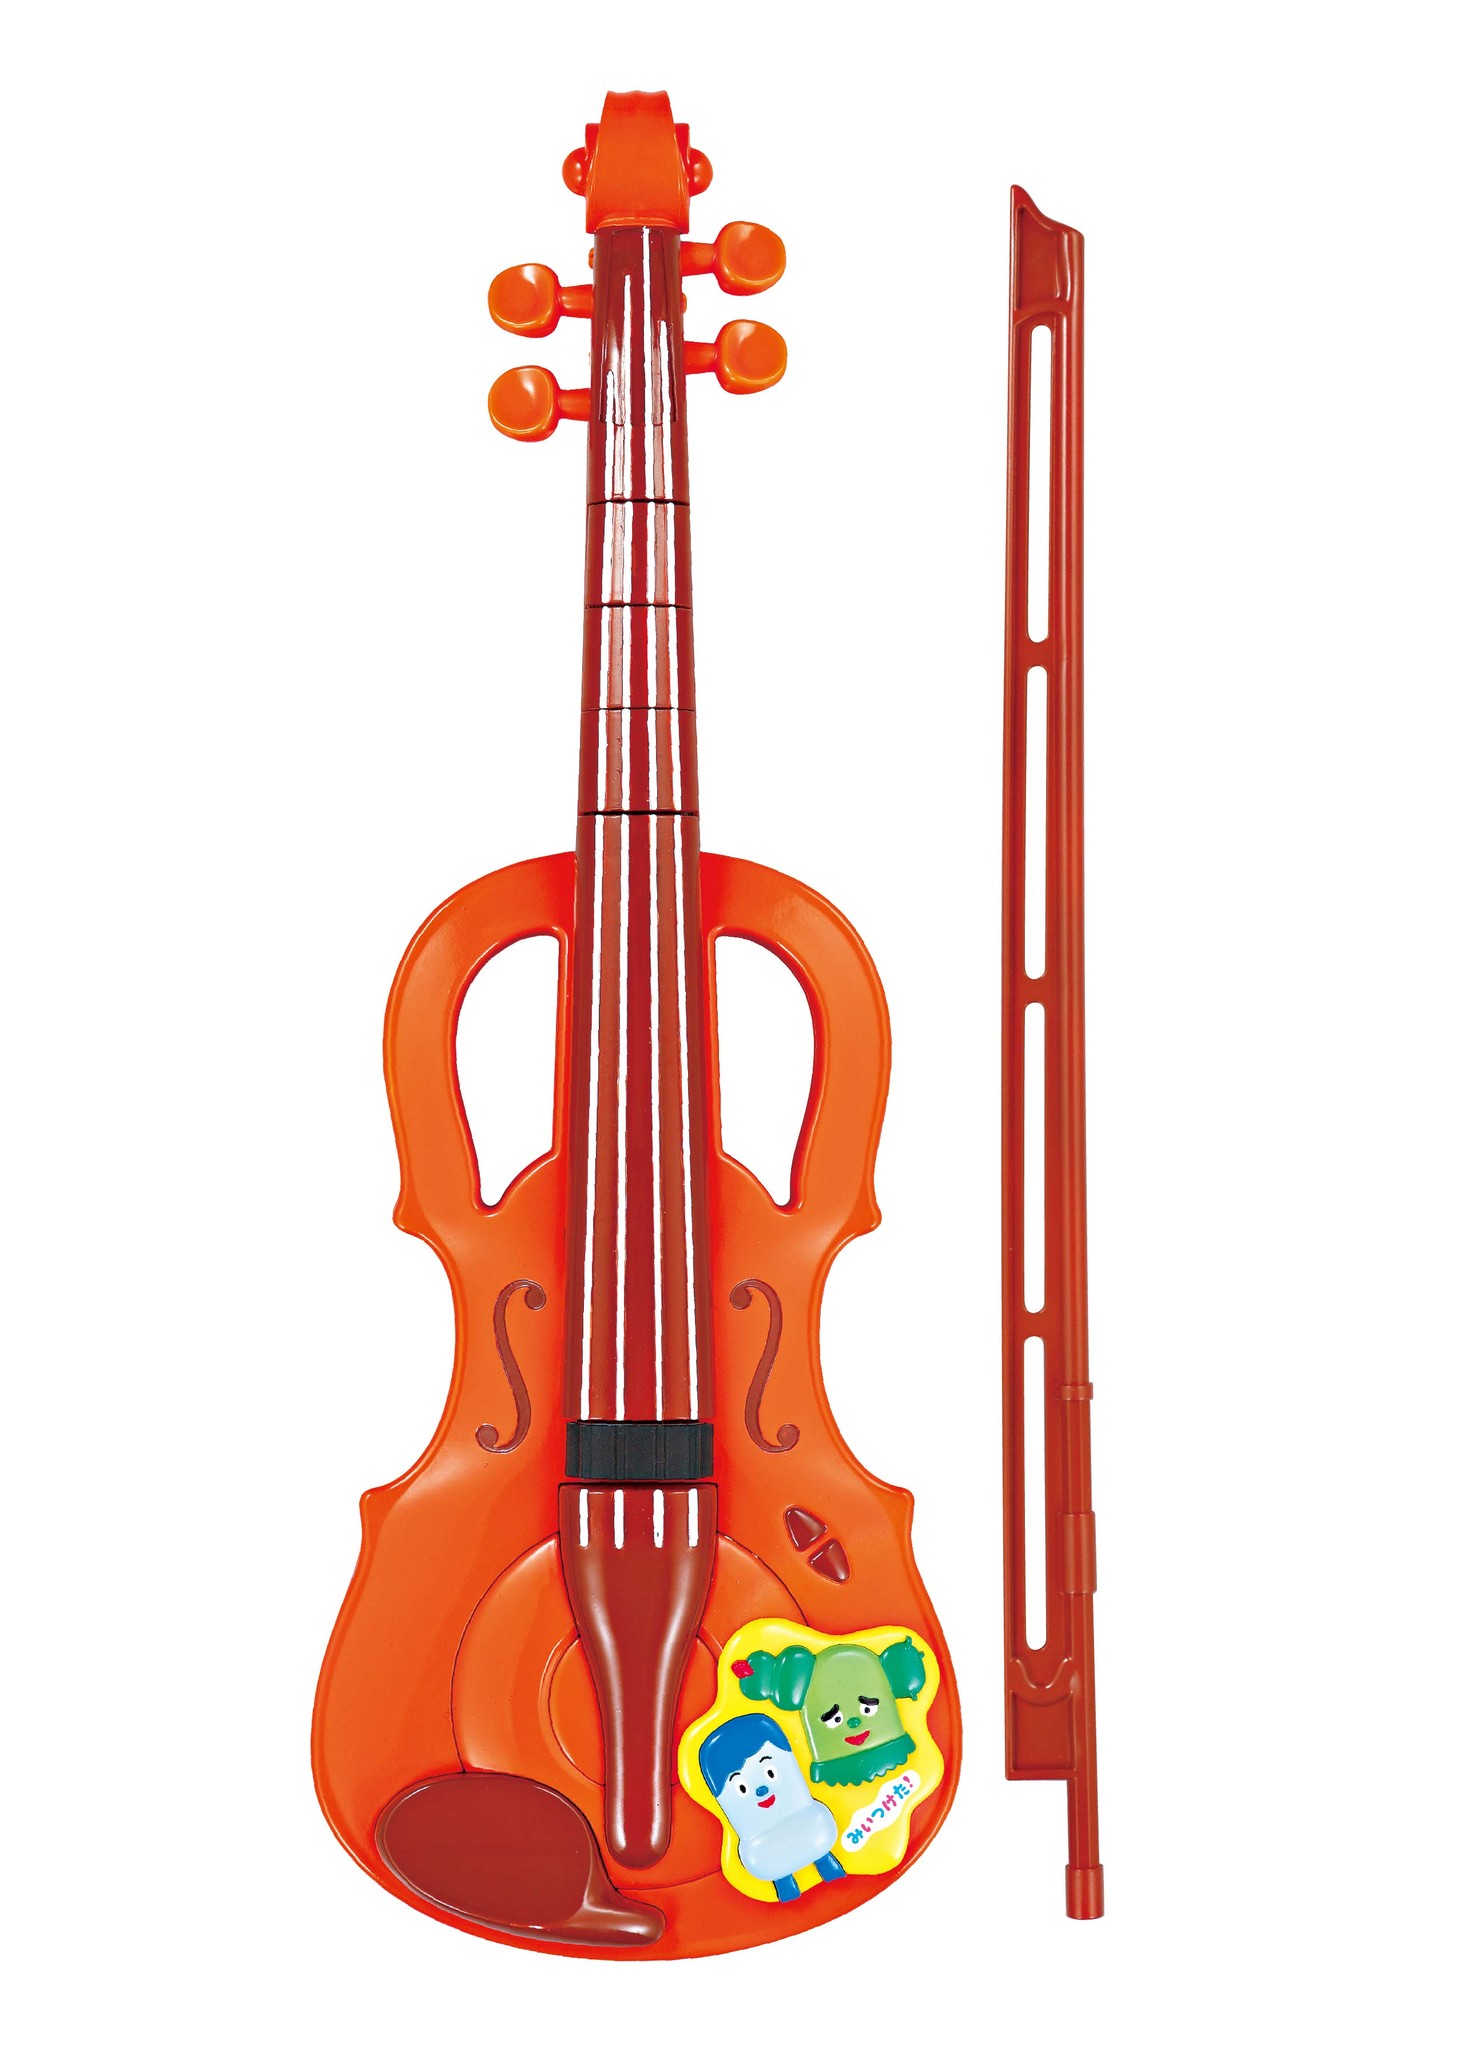 セガトイズ みいつけた コッシー サボさんのスター なバイオリン みいつけた ともだちみいつけた ハウスボックス 新発売 セガトイズのプレスリリース